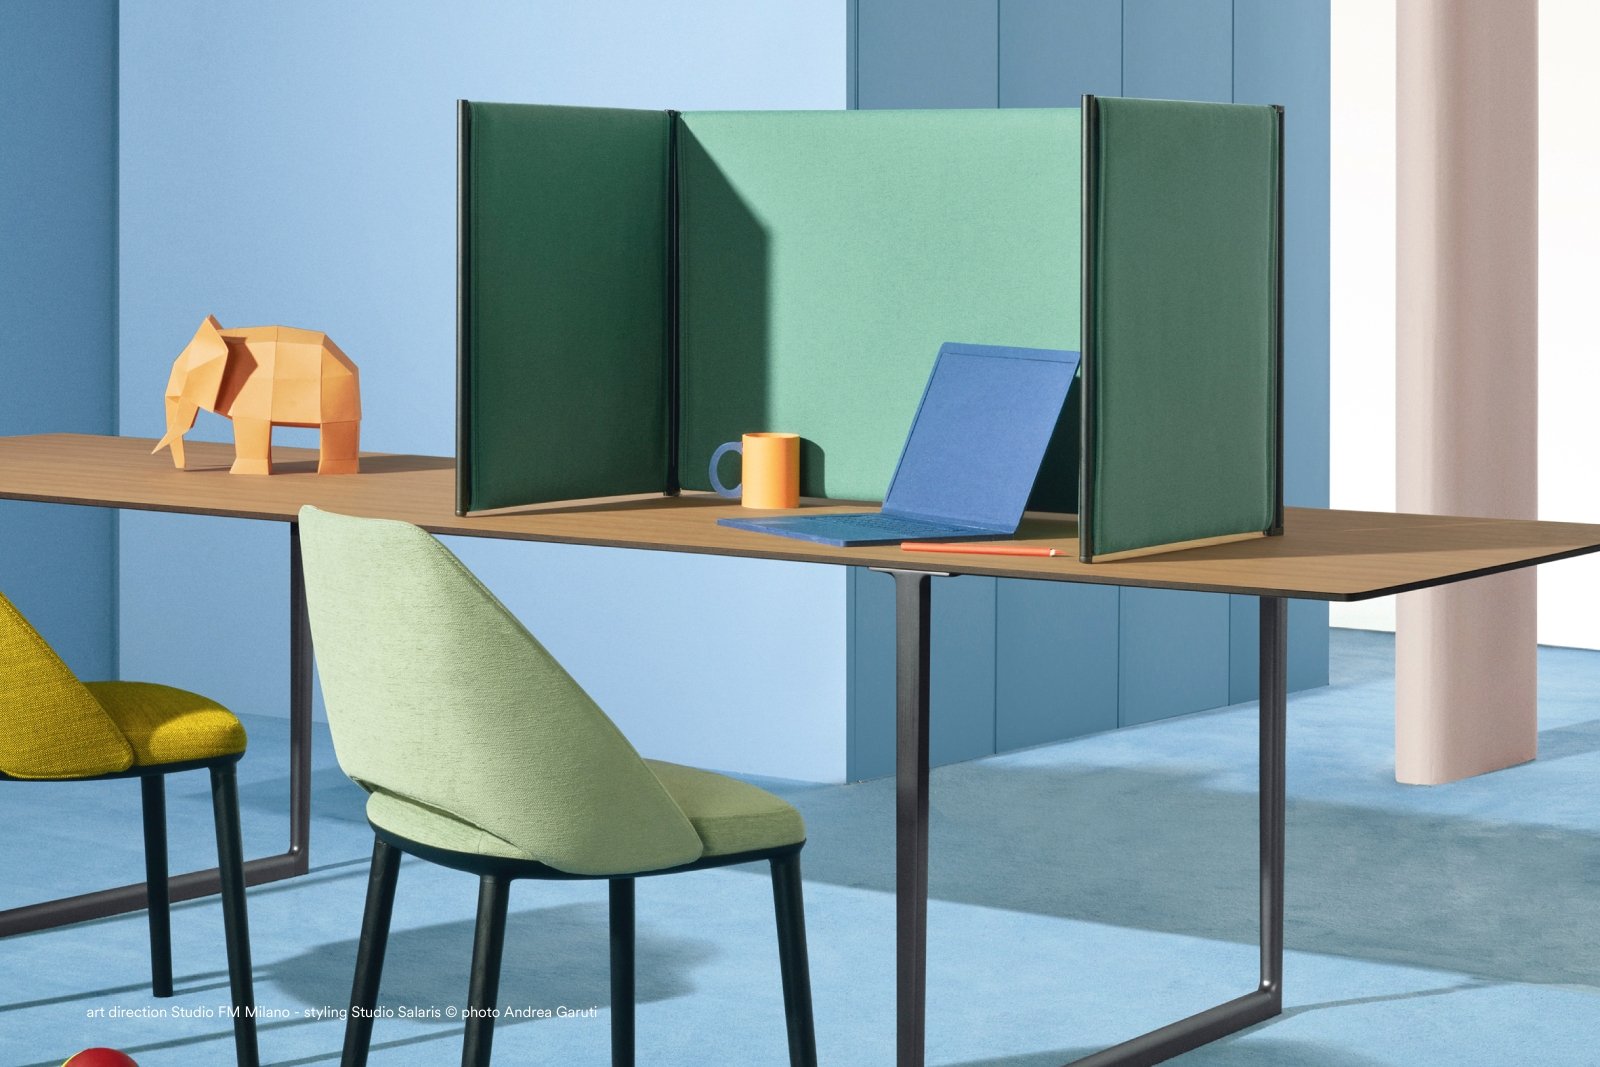 Toa Desk from Pedrali, designed by Robin Rizzini